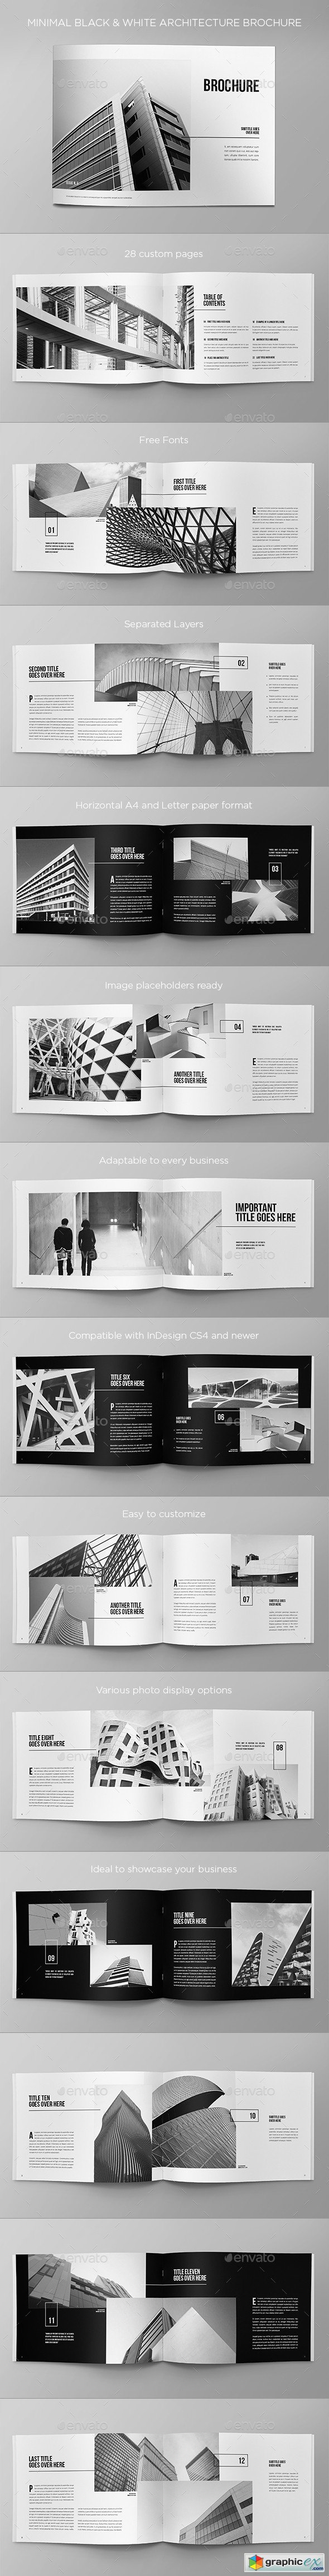 Minimal Black & White Architecture Brochure